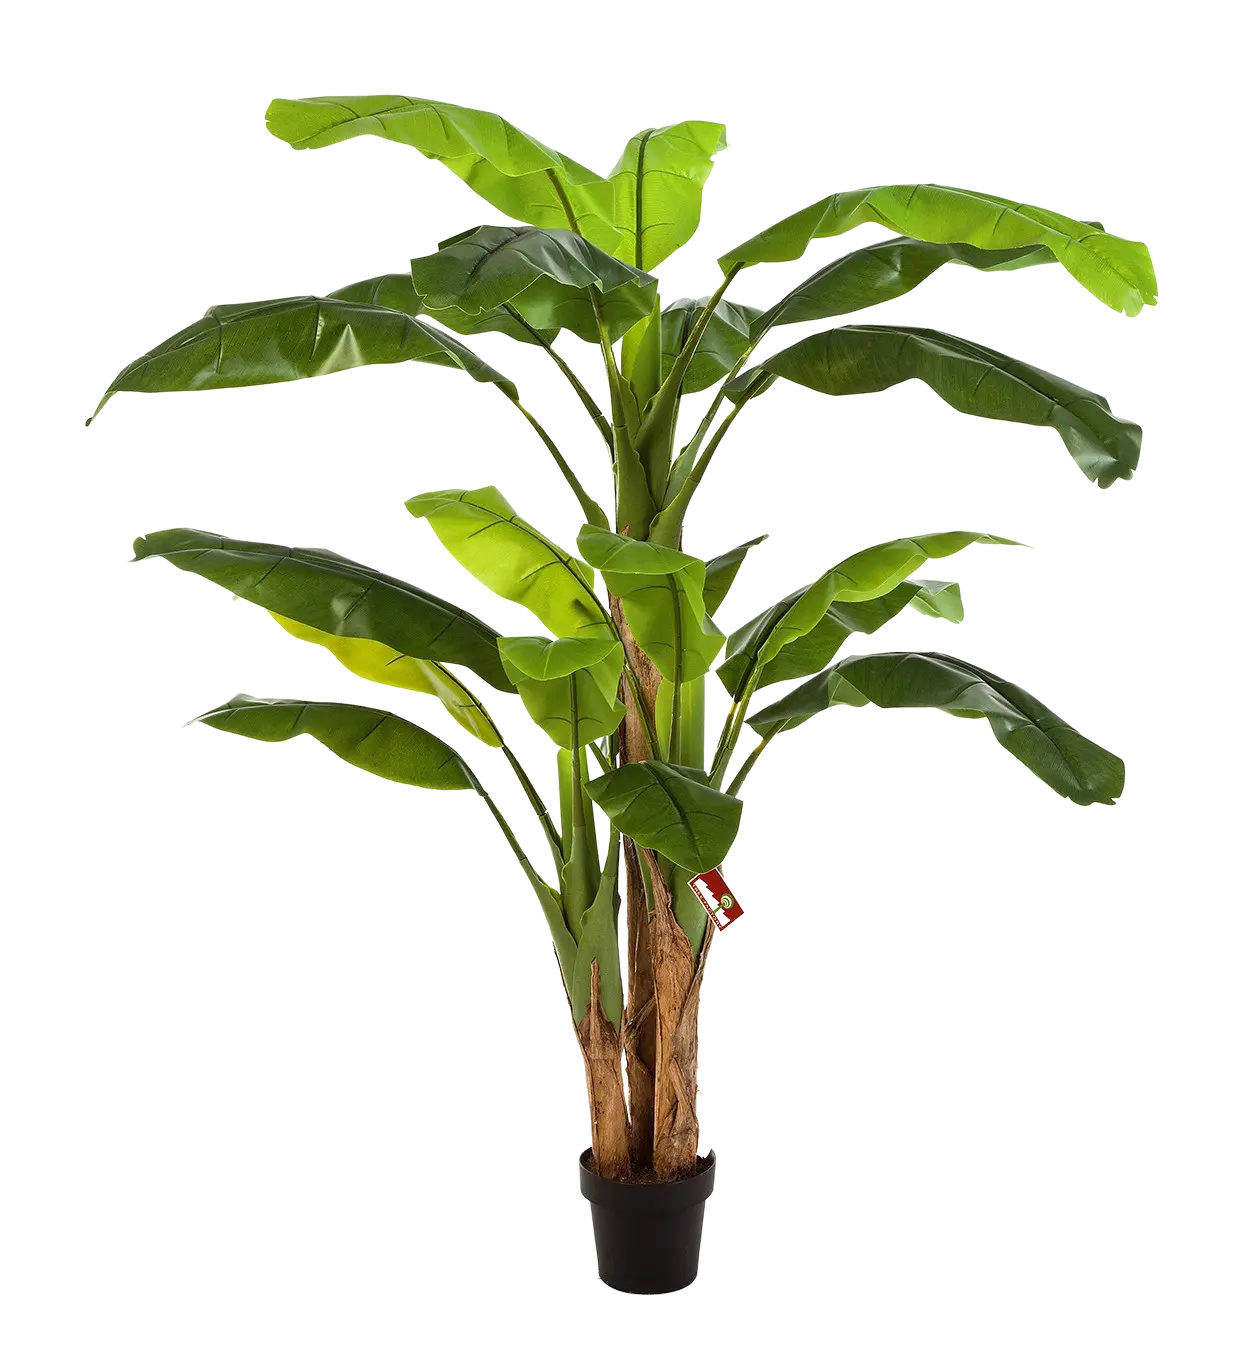 Künstlicher Bananenbaum - Pauline auf transparentem Hintergrund mit echt wirkenden Kunstblättern. Diese Kunstpflanze gehört zur Gattung/Familie der "Bananenbäume" bzw. "Kunst-Bananenbäume".